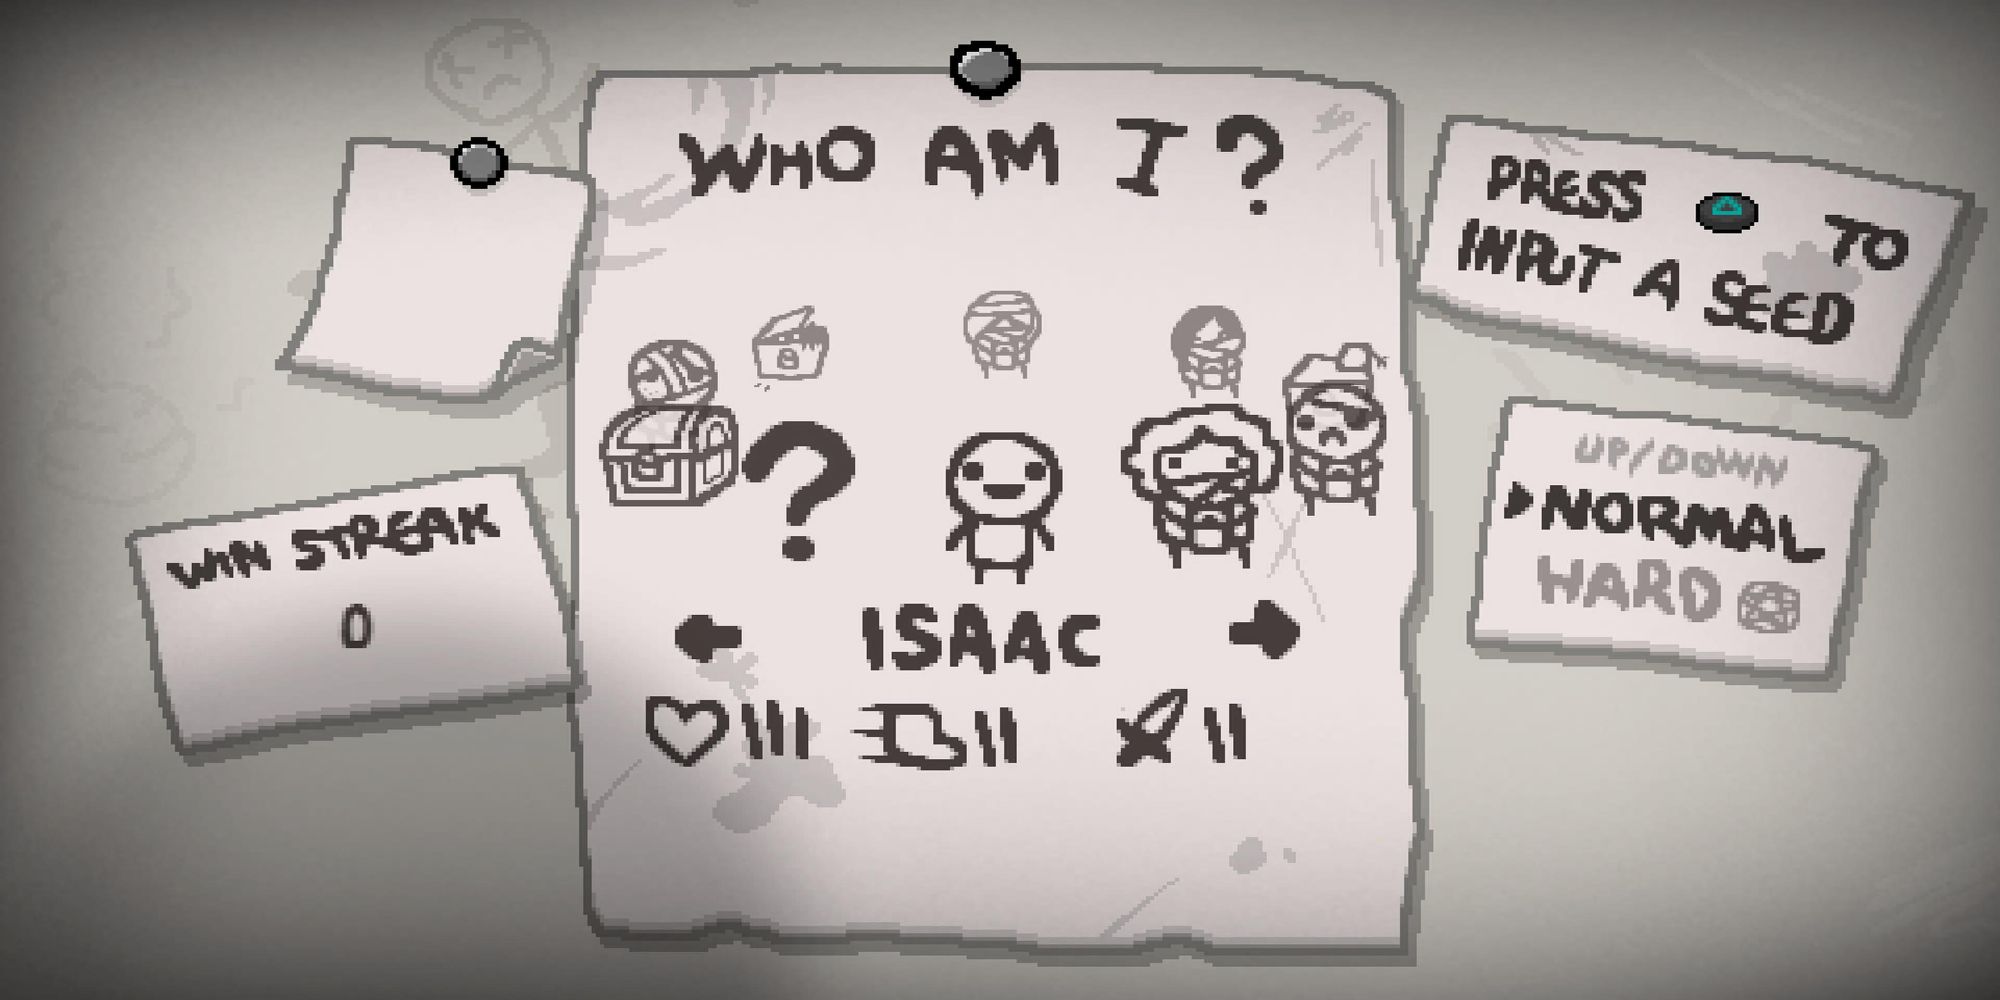 The Binding of Isaac character select highlighting Isaac